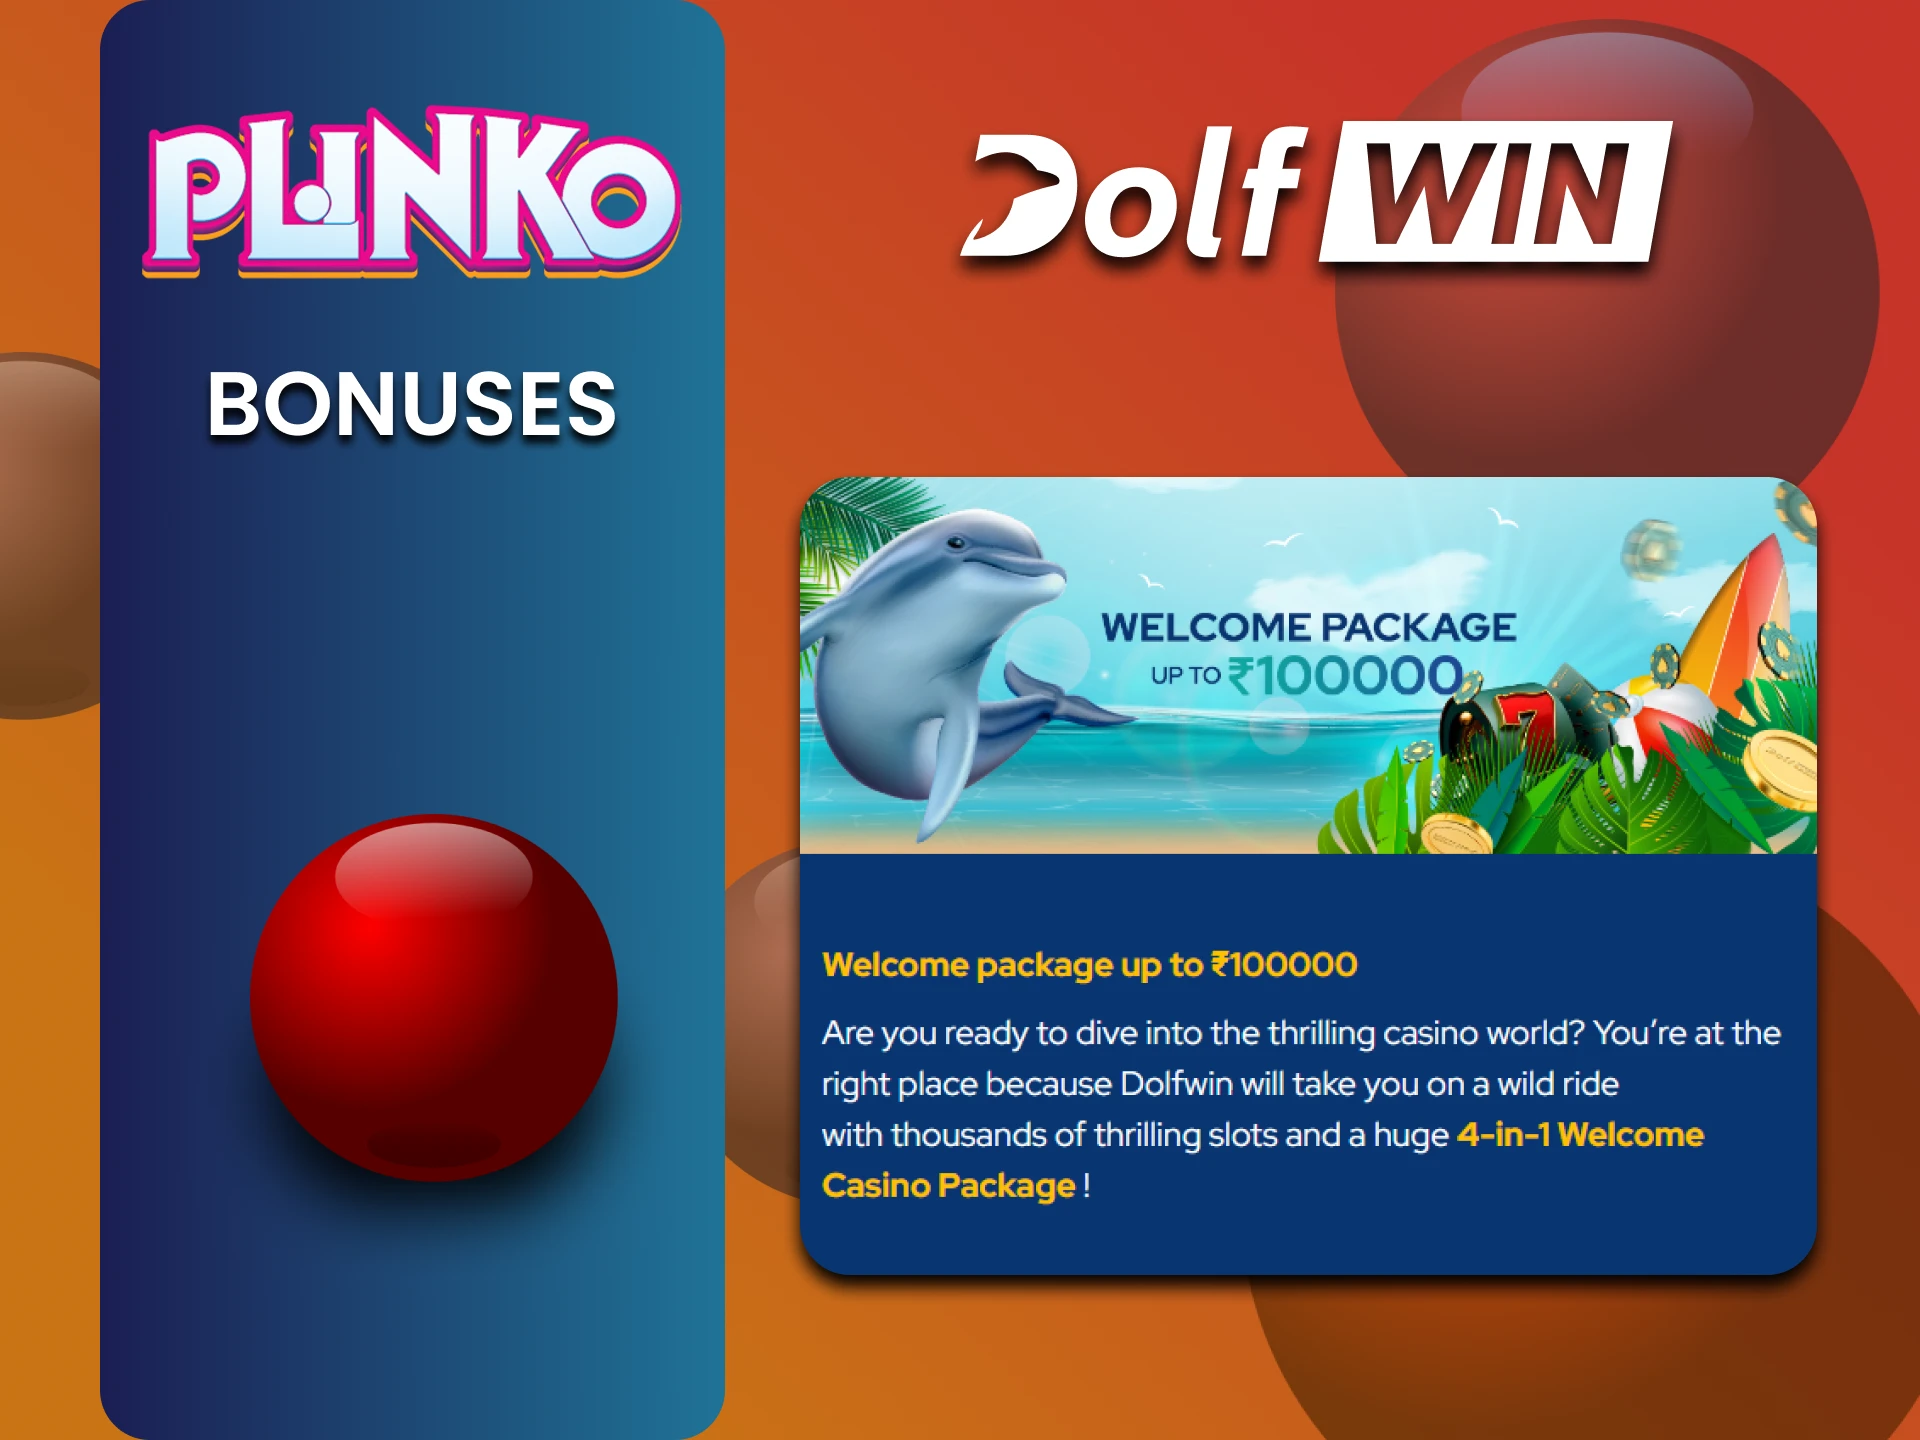 Dolfwin gives bonuses for playing Plinko.